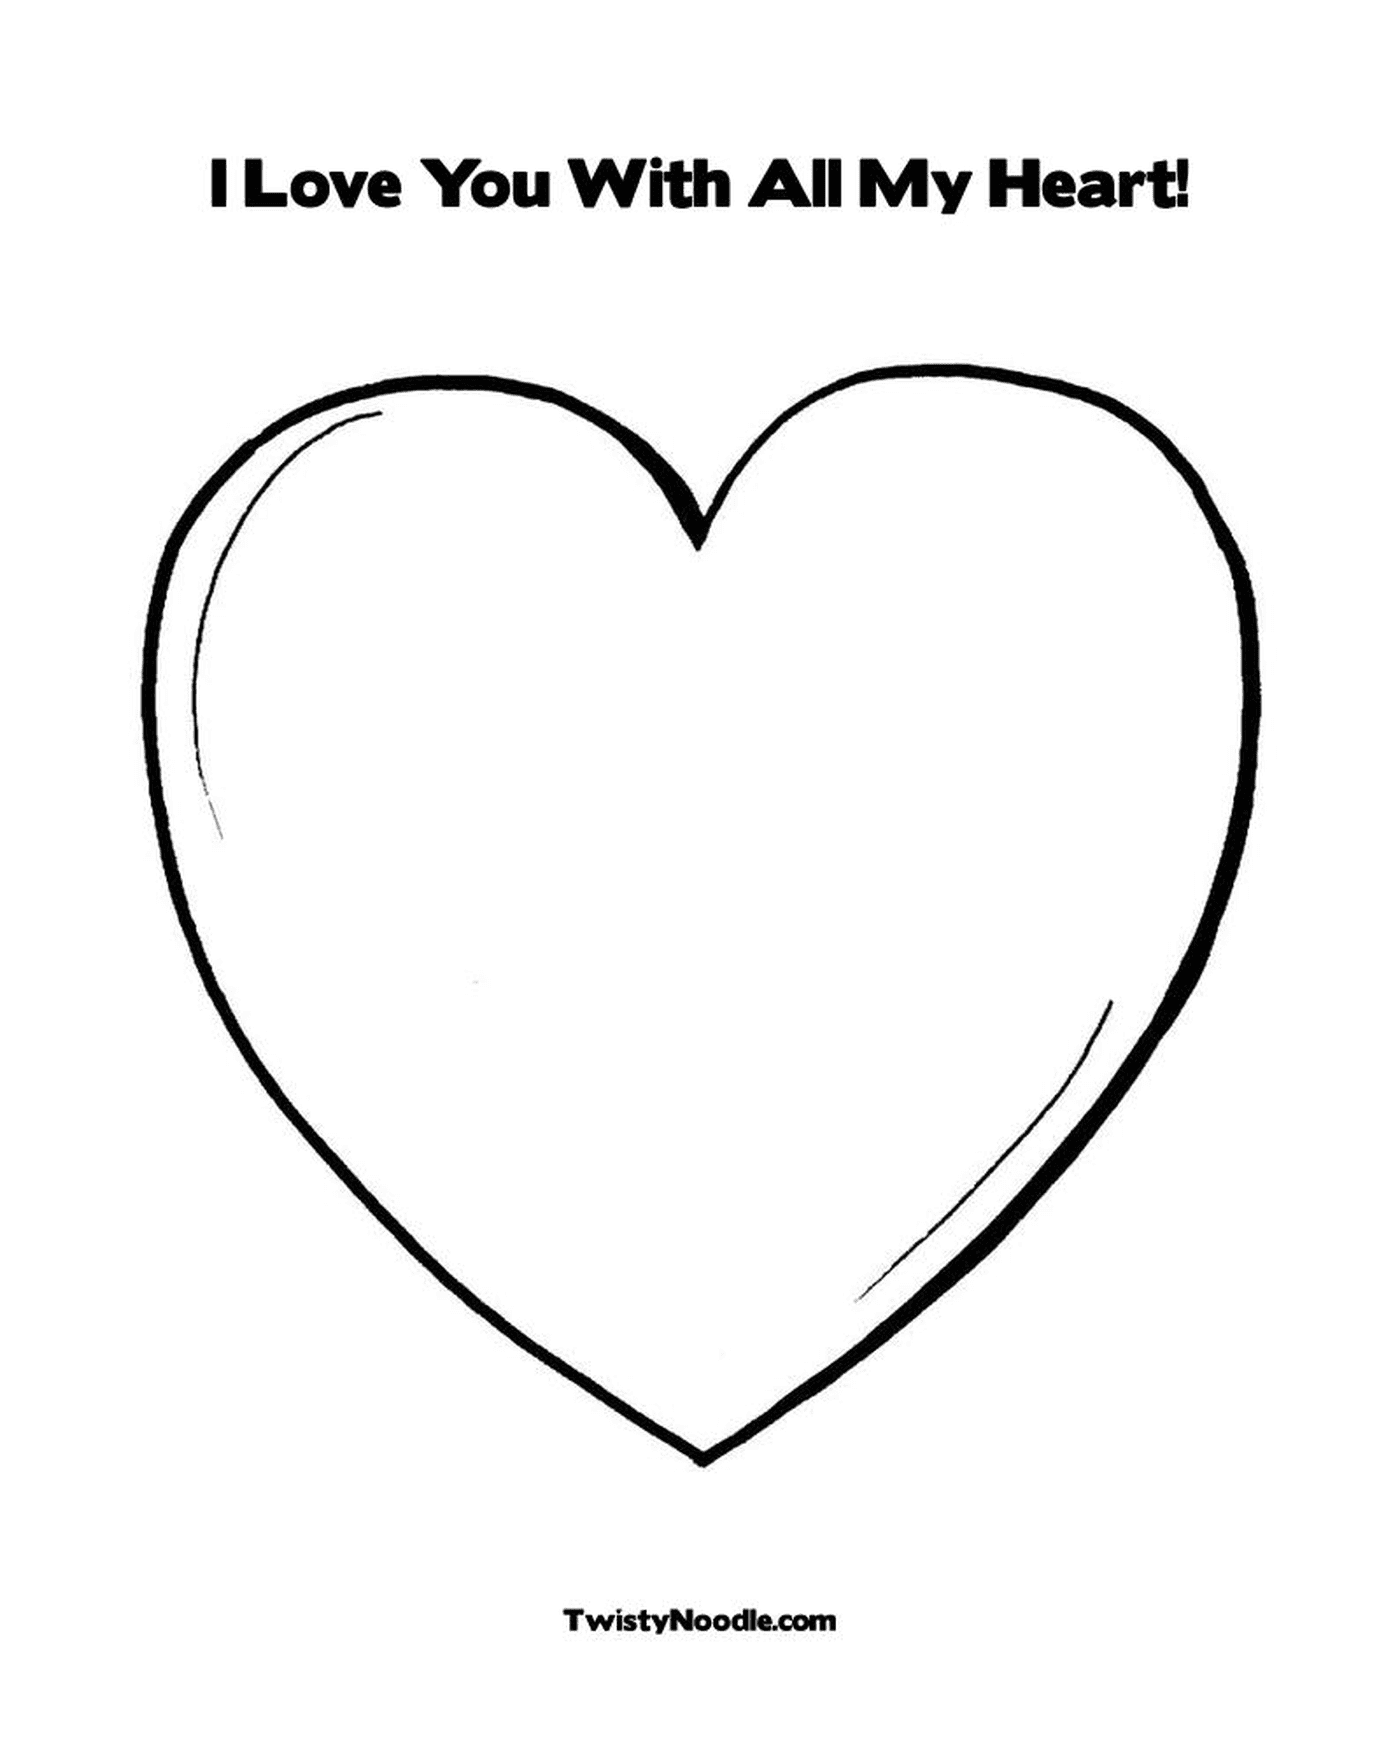  Uma imagem de um coração 